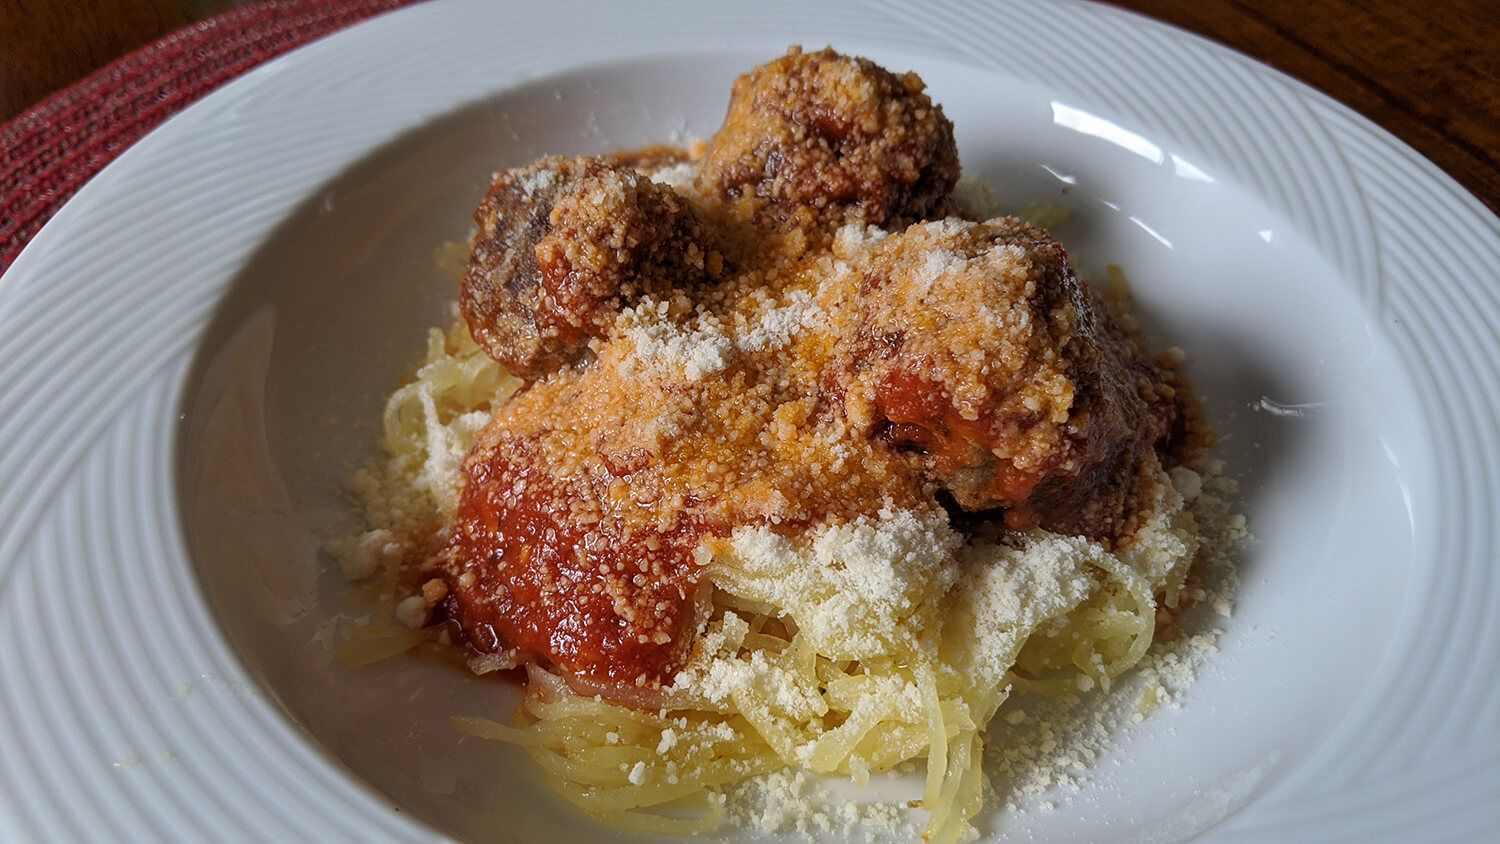 4. Spaghetti & Meatballs with Squash